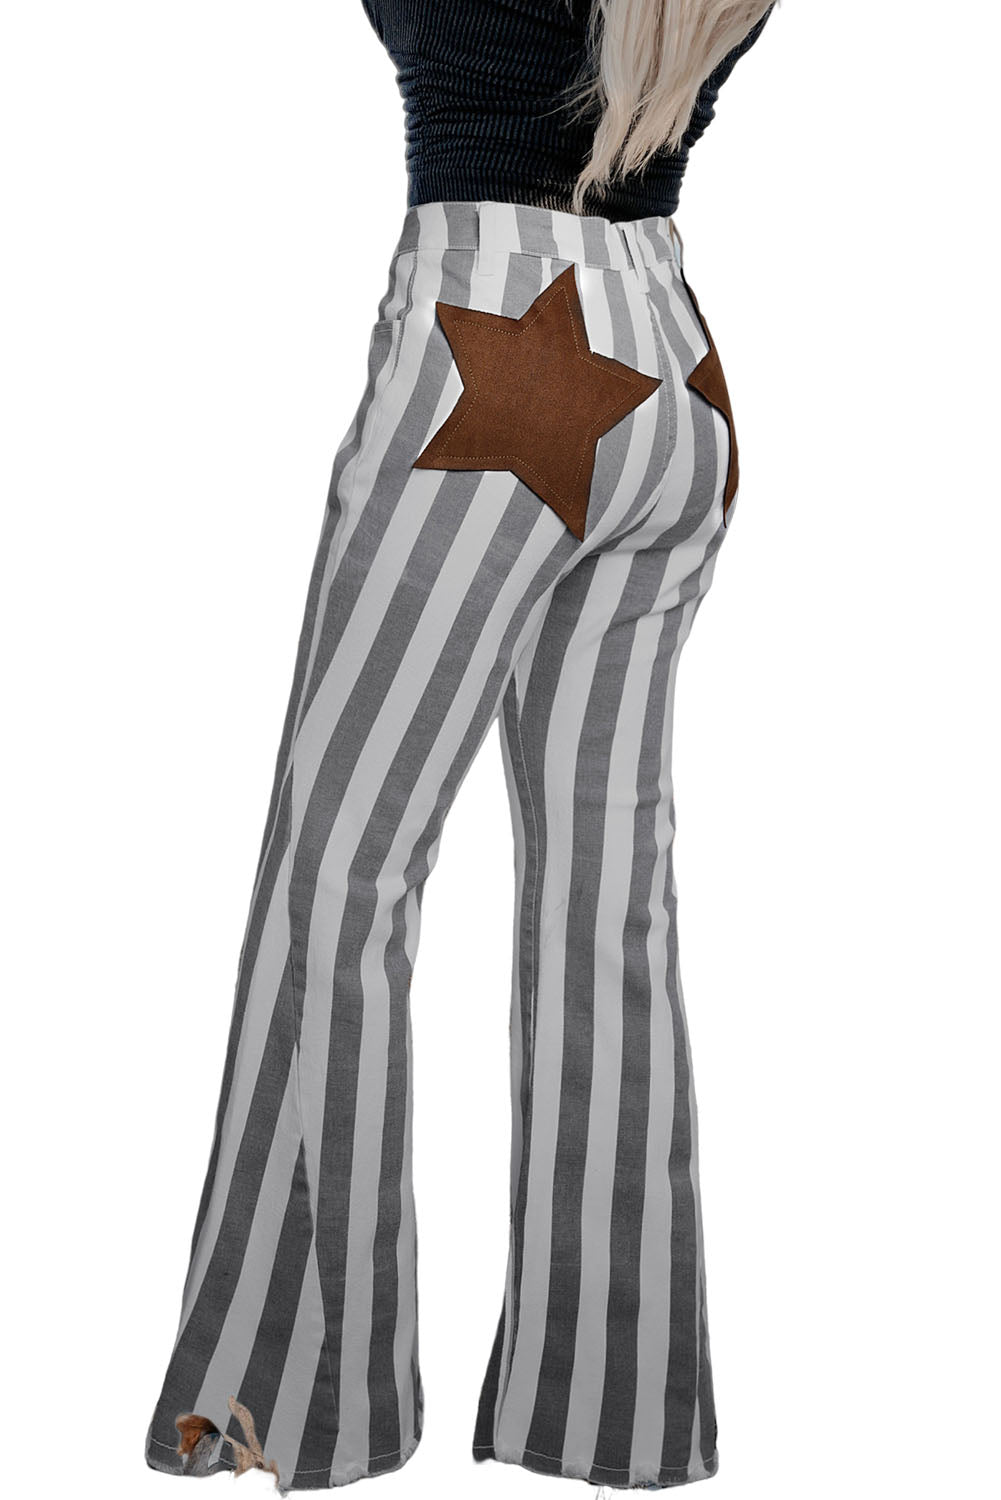 Stripe Star Embellished Western Flare Jeans Jeans JT's Designer Fashion